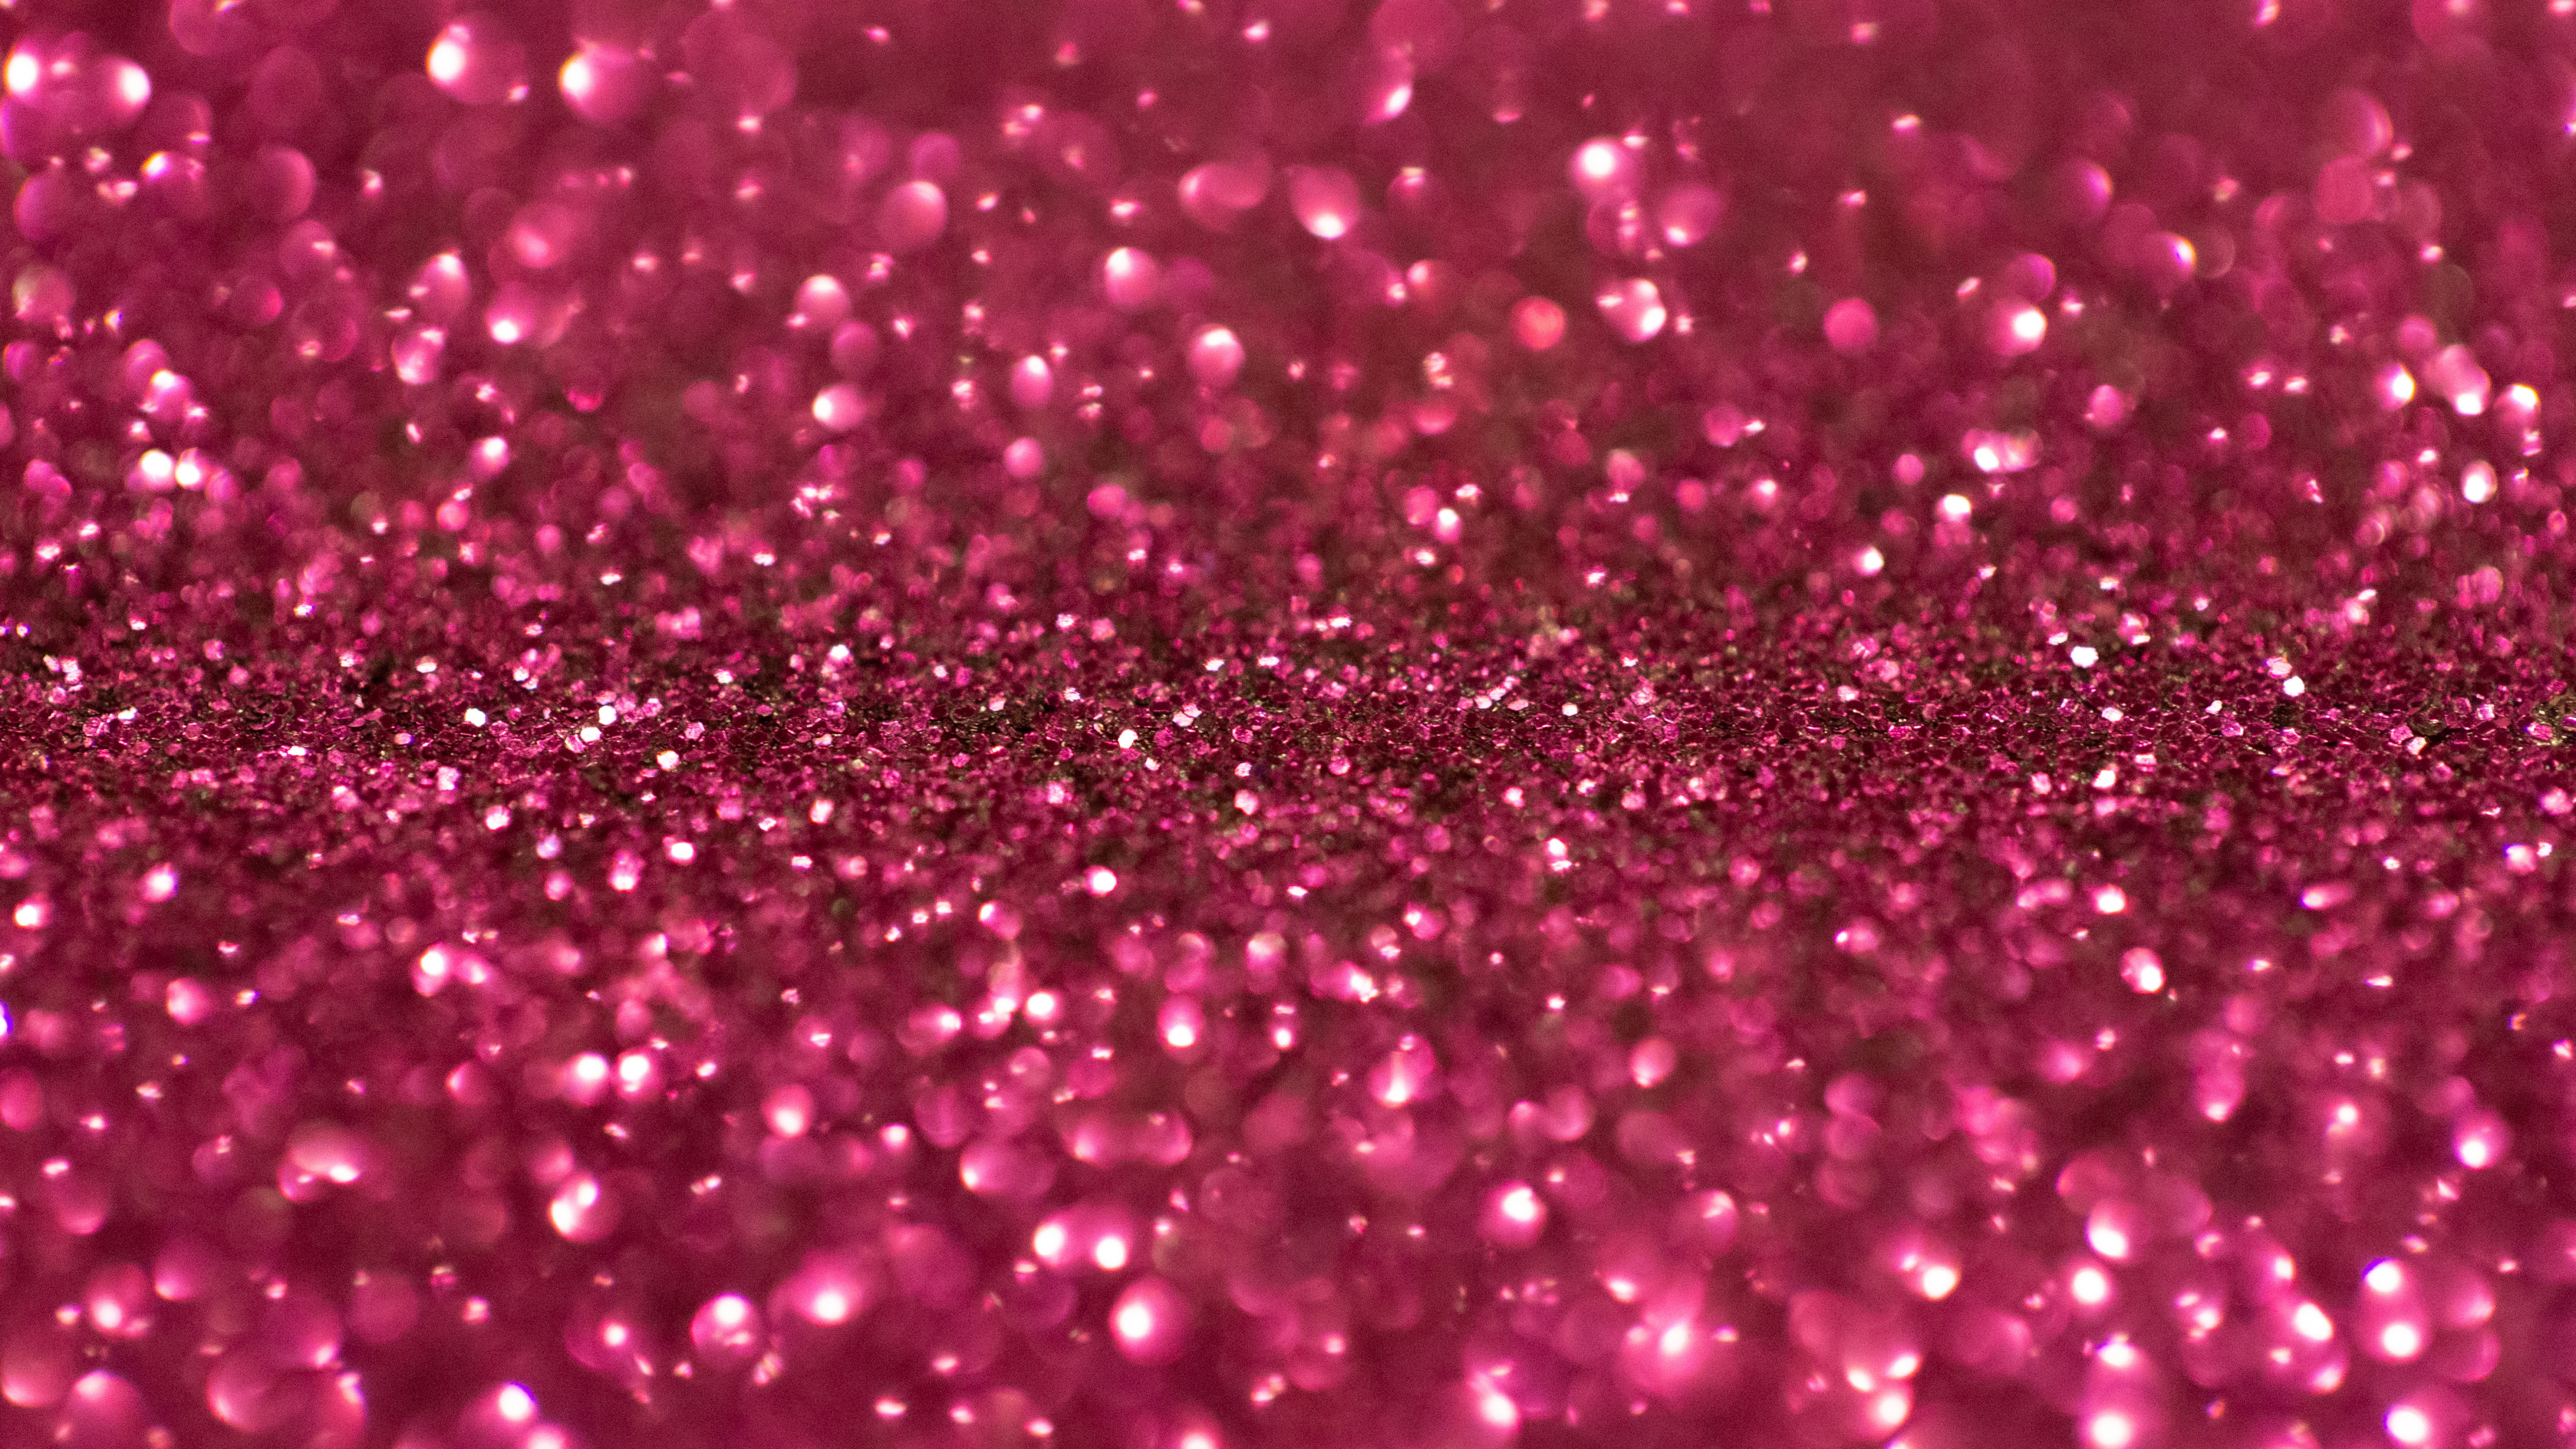 Hình nền phấn hồng lấp lánh 4k sẽ làm cho màn hình của bạn thêm phần đẳng cấp và rực rỡ. Với hiệu ứng lấp lánh rực rỡ và chất lượng 4k, chúng sẽ đưa bạn vào một thế giới ánh sáng lấp lánh đầy mộng mơ. Hãy để phấn hồng lấp lánh đưa bạn đến với thế giới tuyệt vời đó!